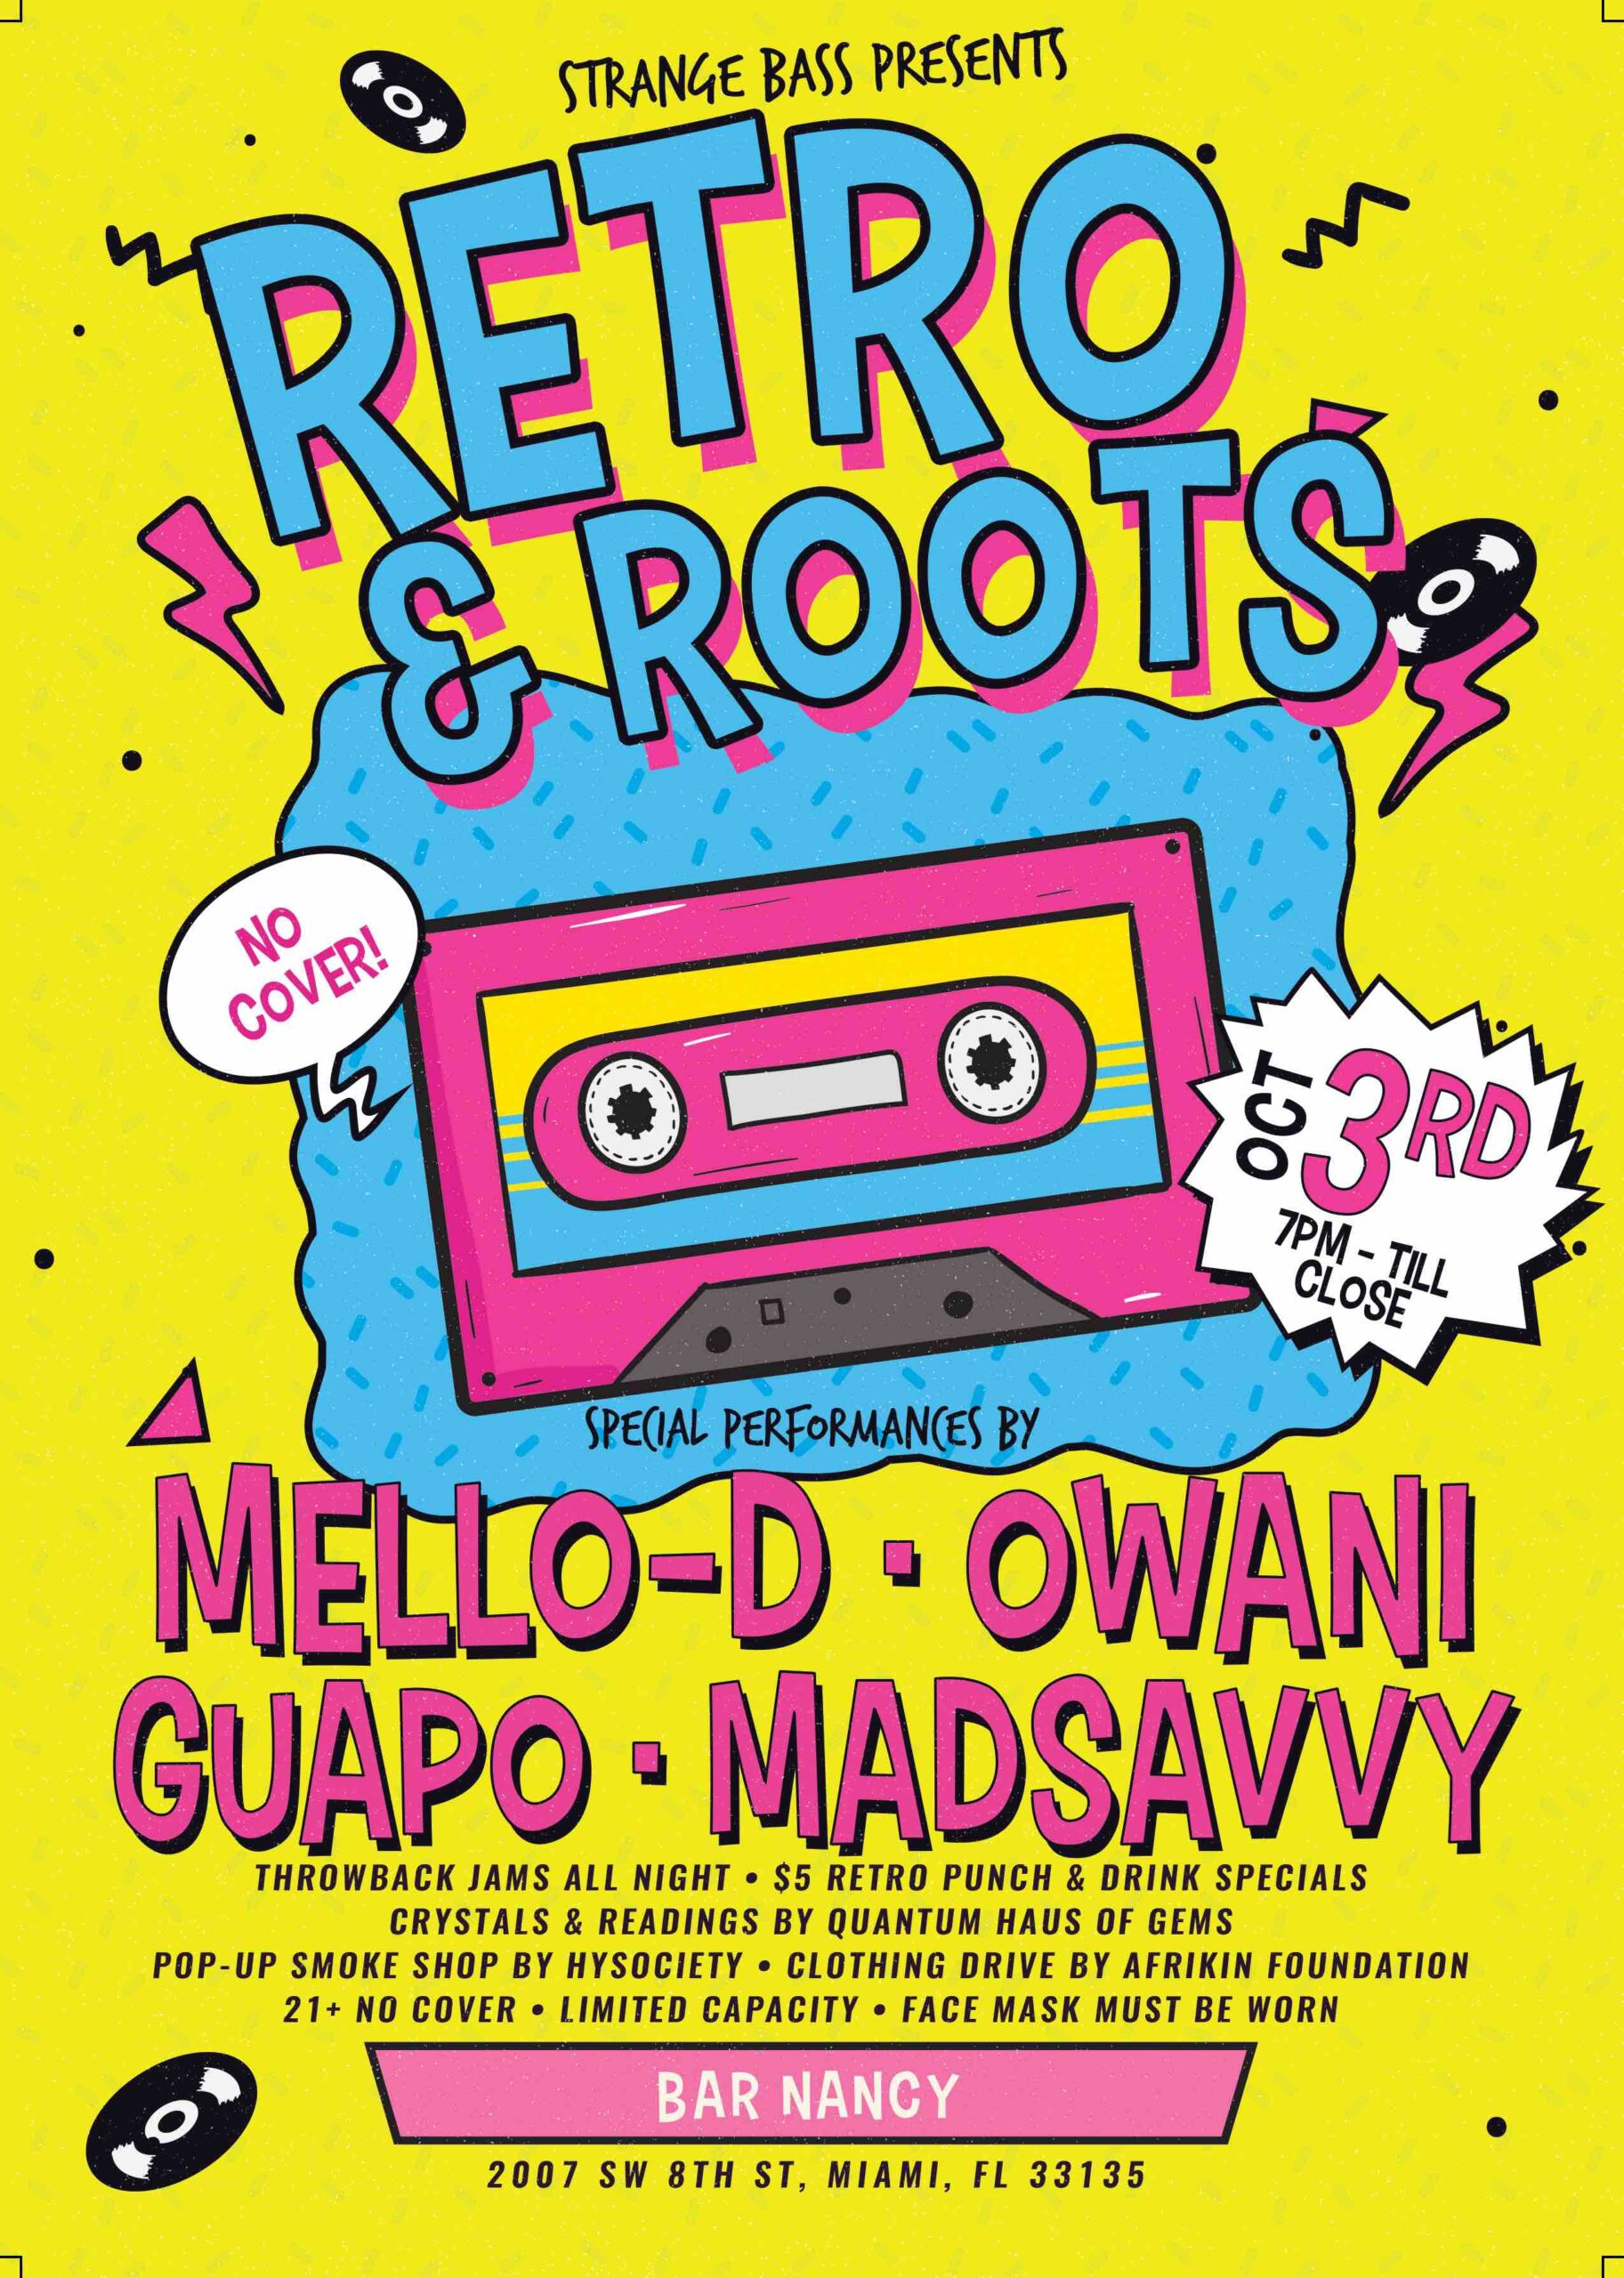 RETRO & ROOTS - MELLO-D - OWANI - GUAPO - MADSAVVY - @ BAR NANCY OCT 3 AT 7PM